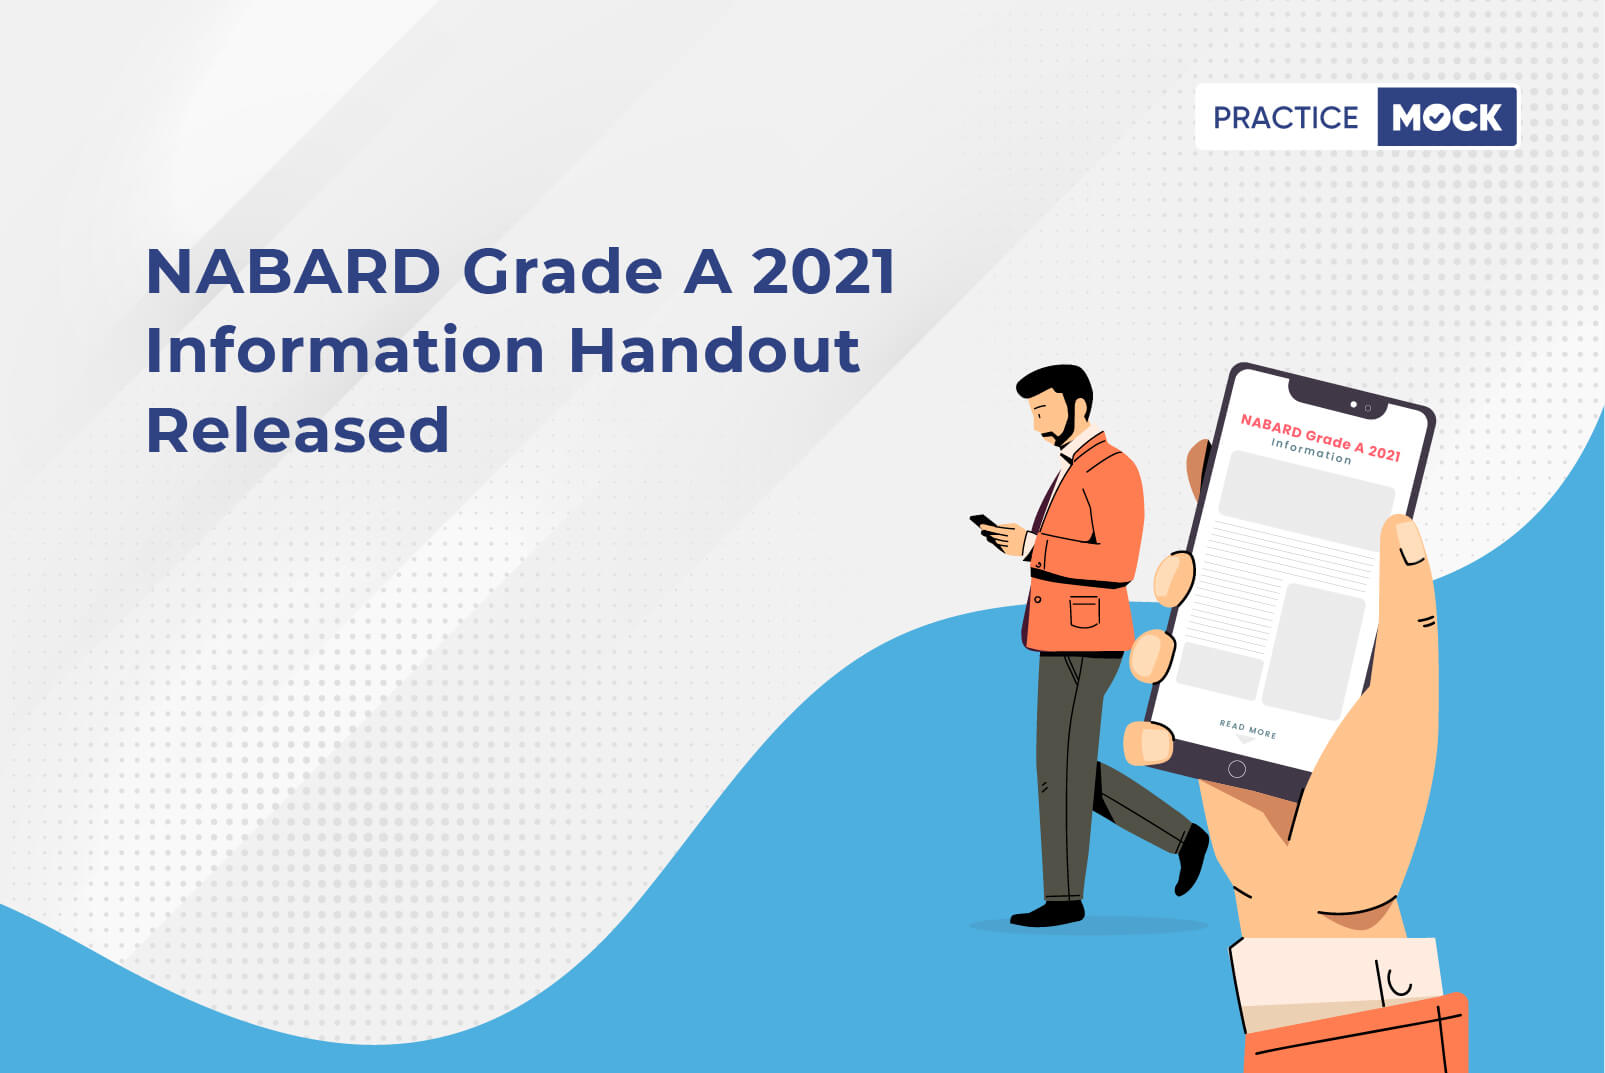 NABARD Grade A Information Handout